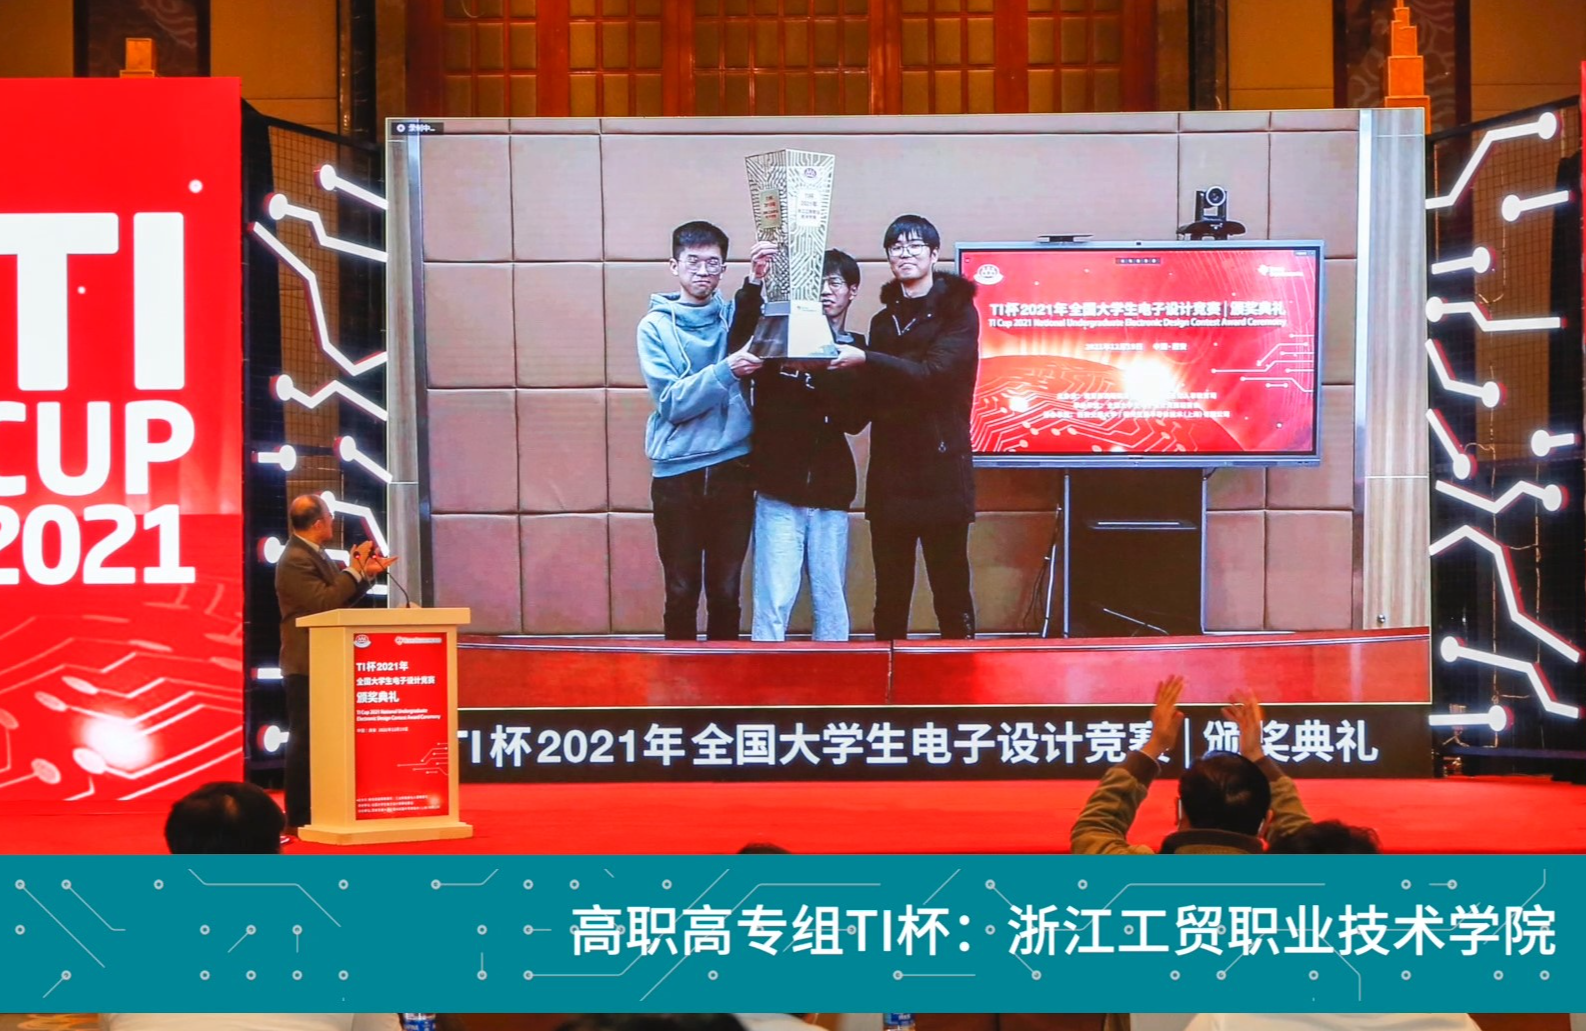 凌智電子模塊產品助力浙江工貿職業技術學院勇奪2021年全國大學生電子設計競賽TI杯（最高獎）